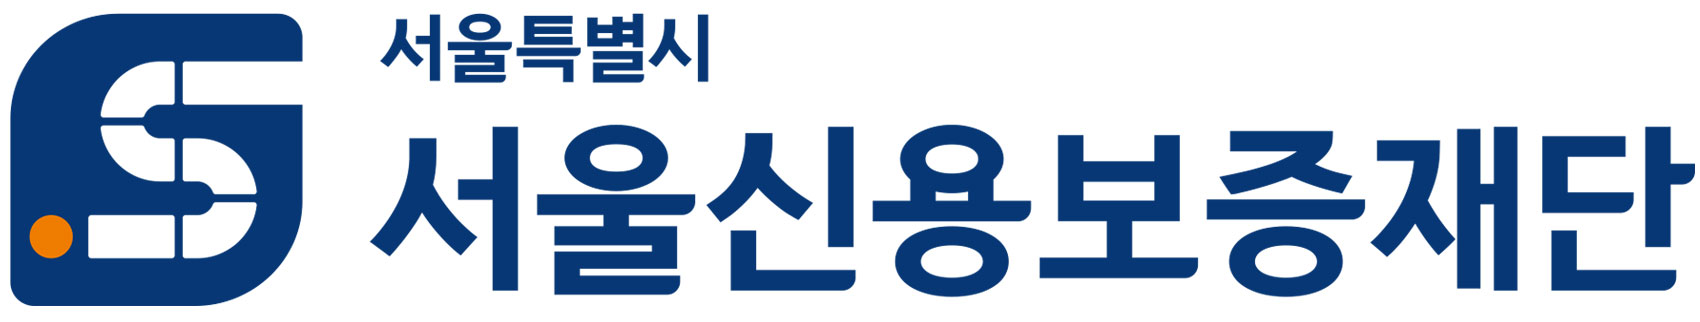 서울신보 로고